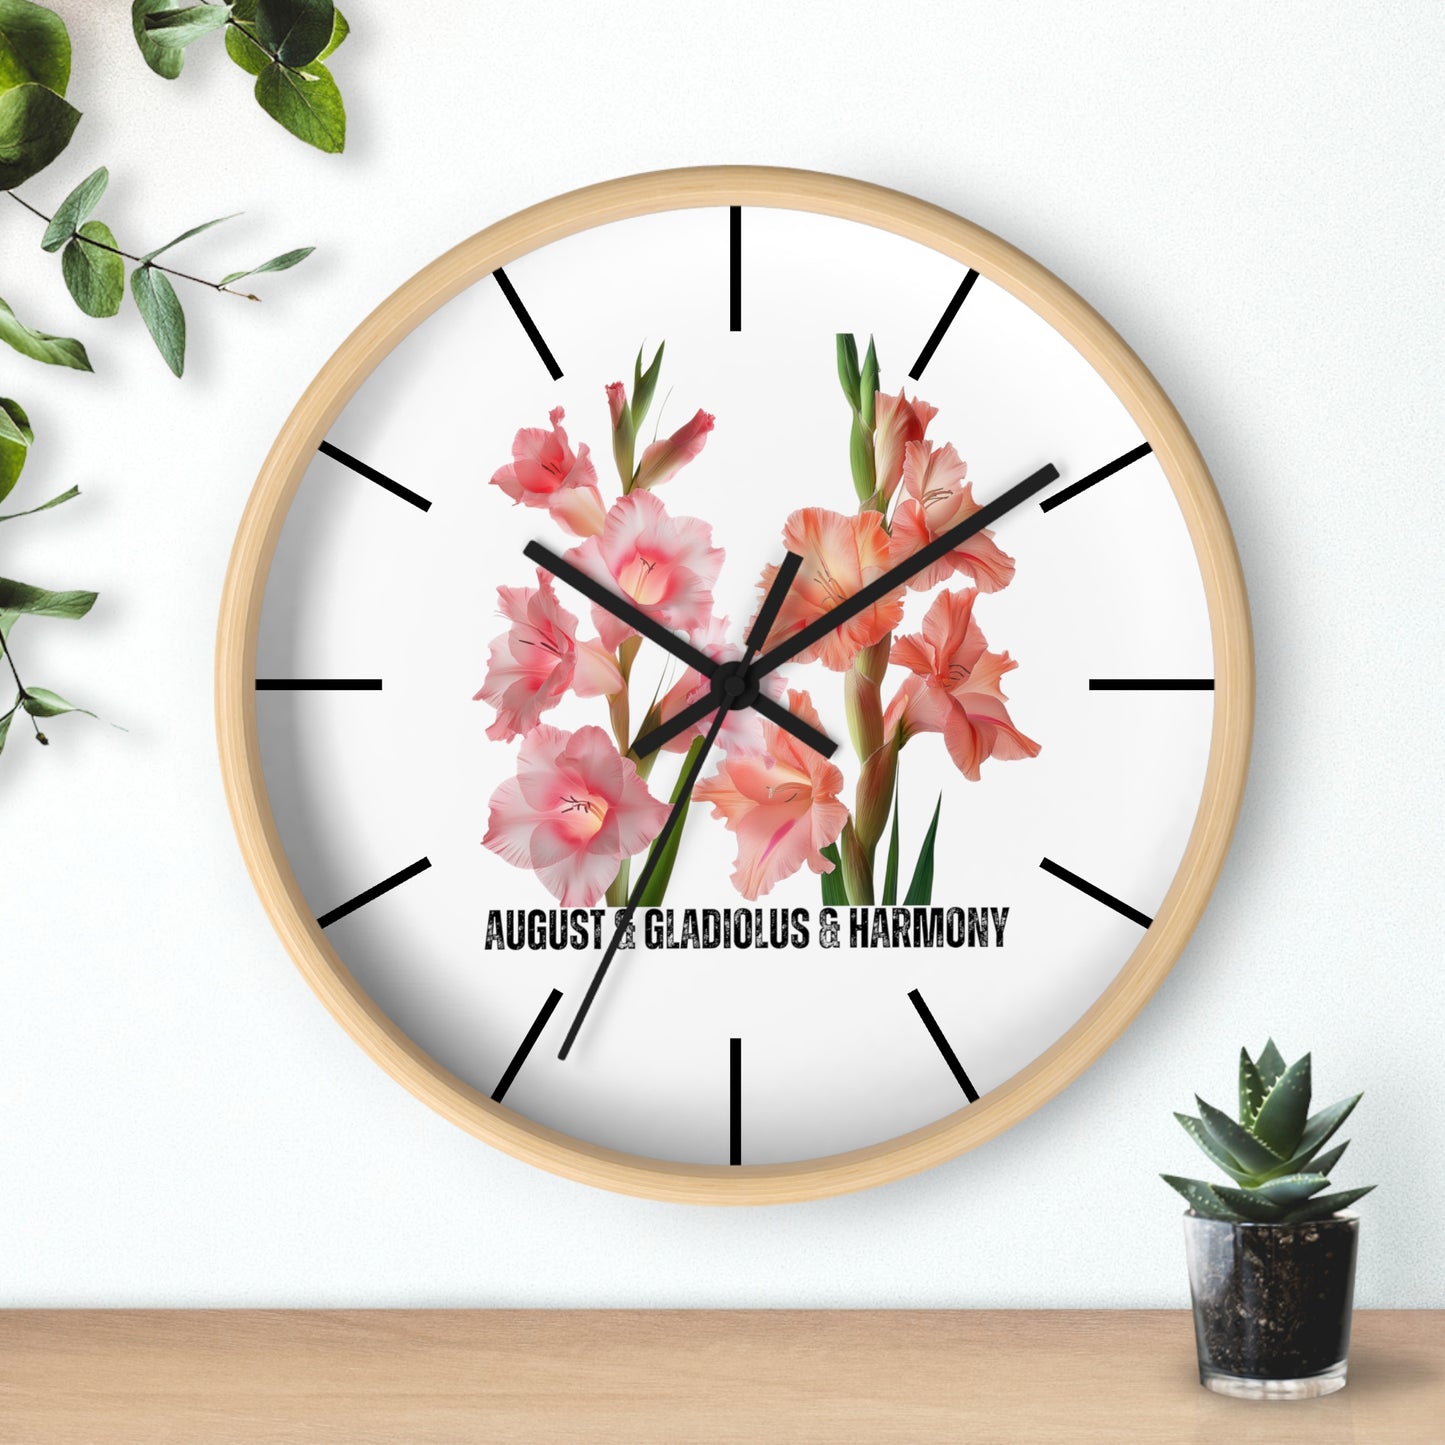 Happy Birthday August, Gladiolus - Wall Clock